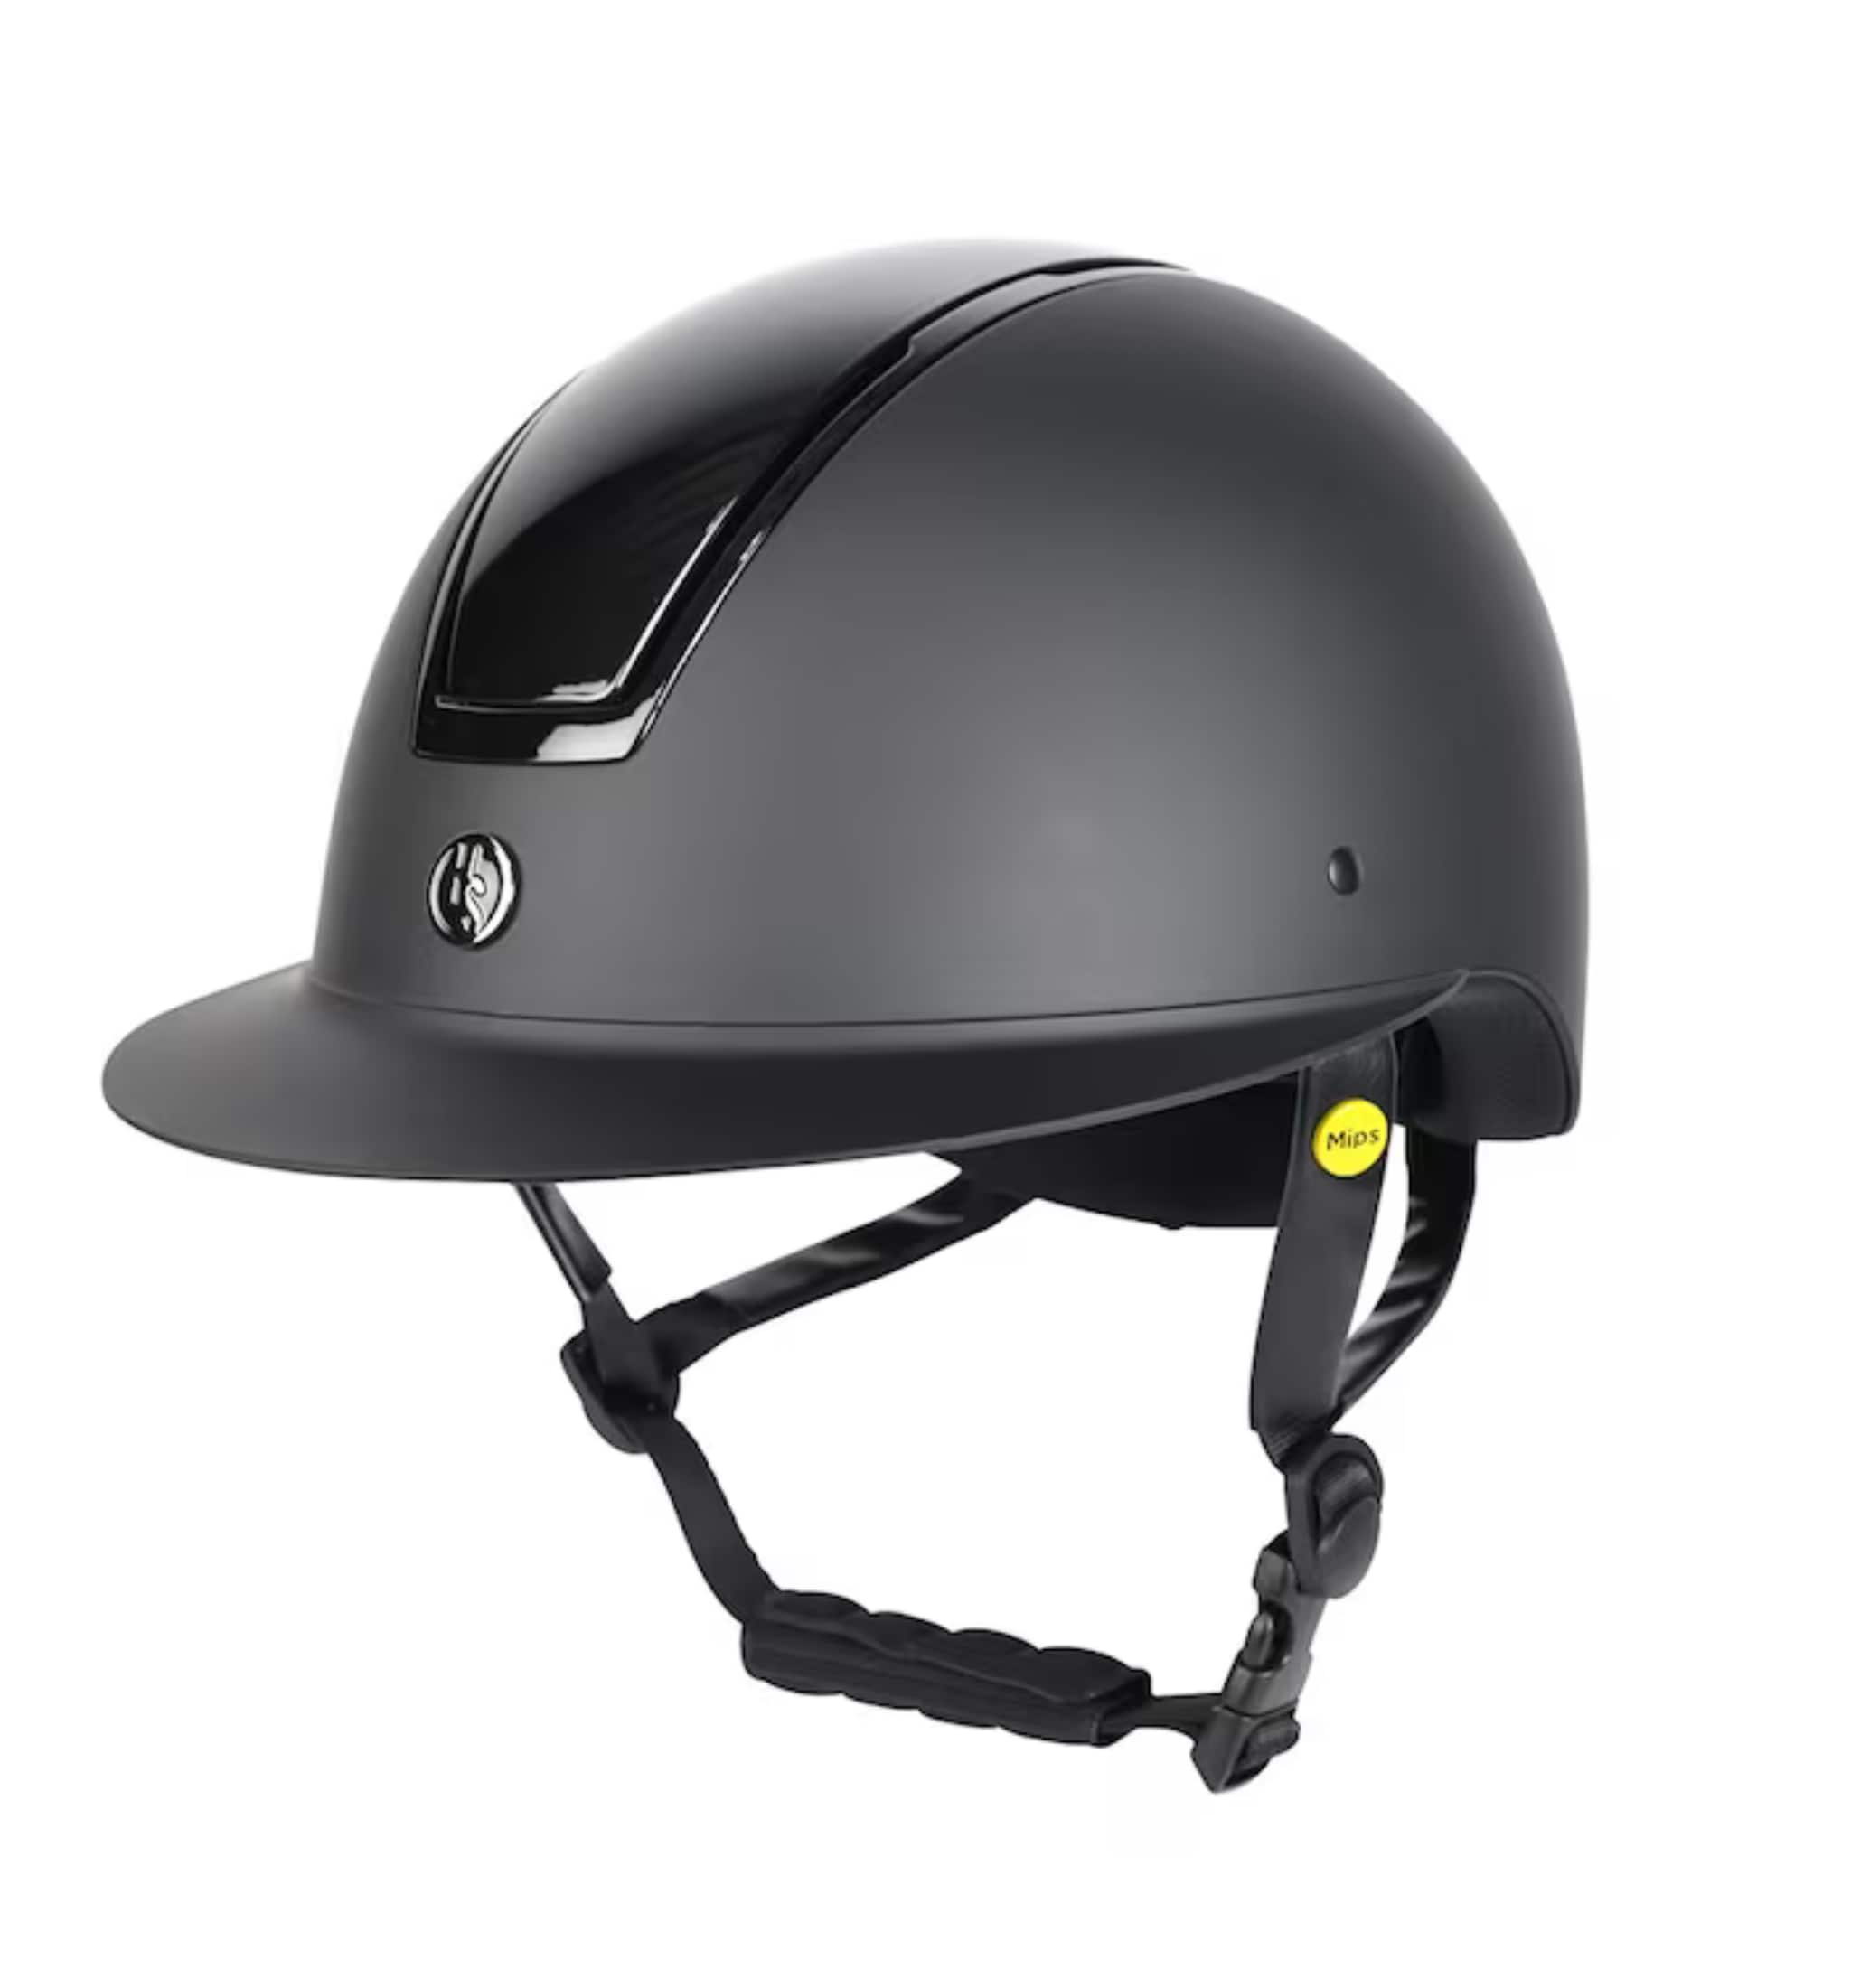 HS MIPS Vision Helmet Agat - Black